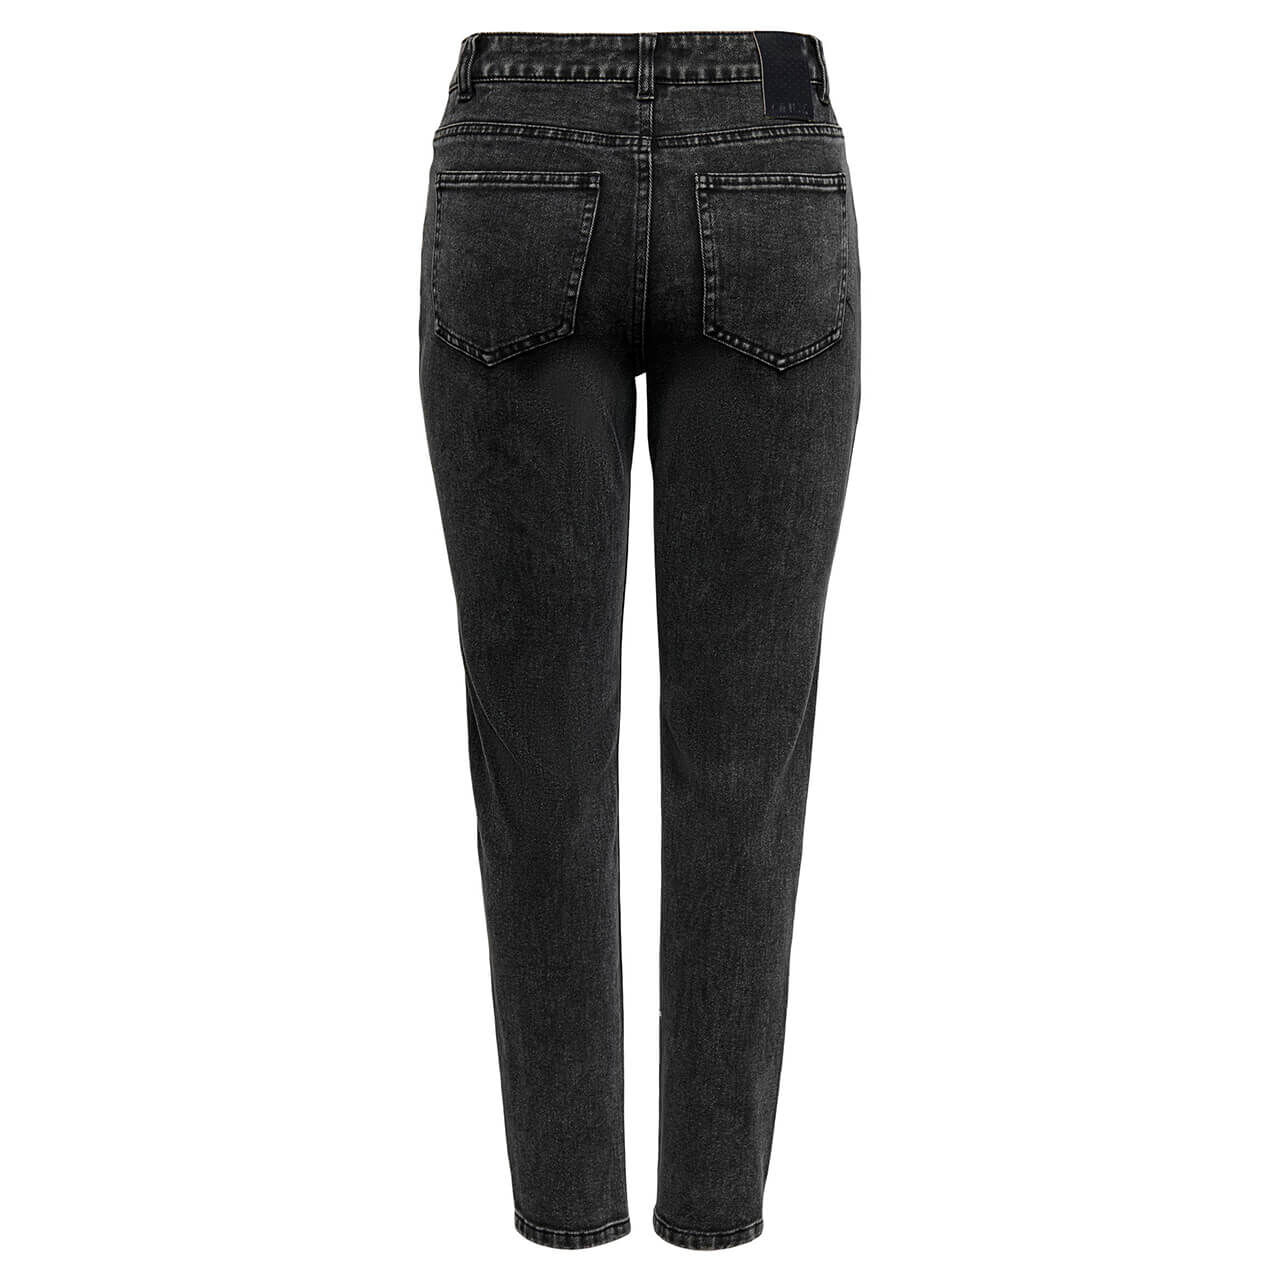 Only Jeans Emily Ankle Straight für Damen in Schwarz verwaschen, FarbNr.: 278217